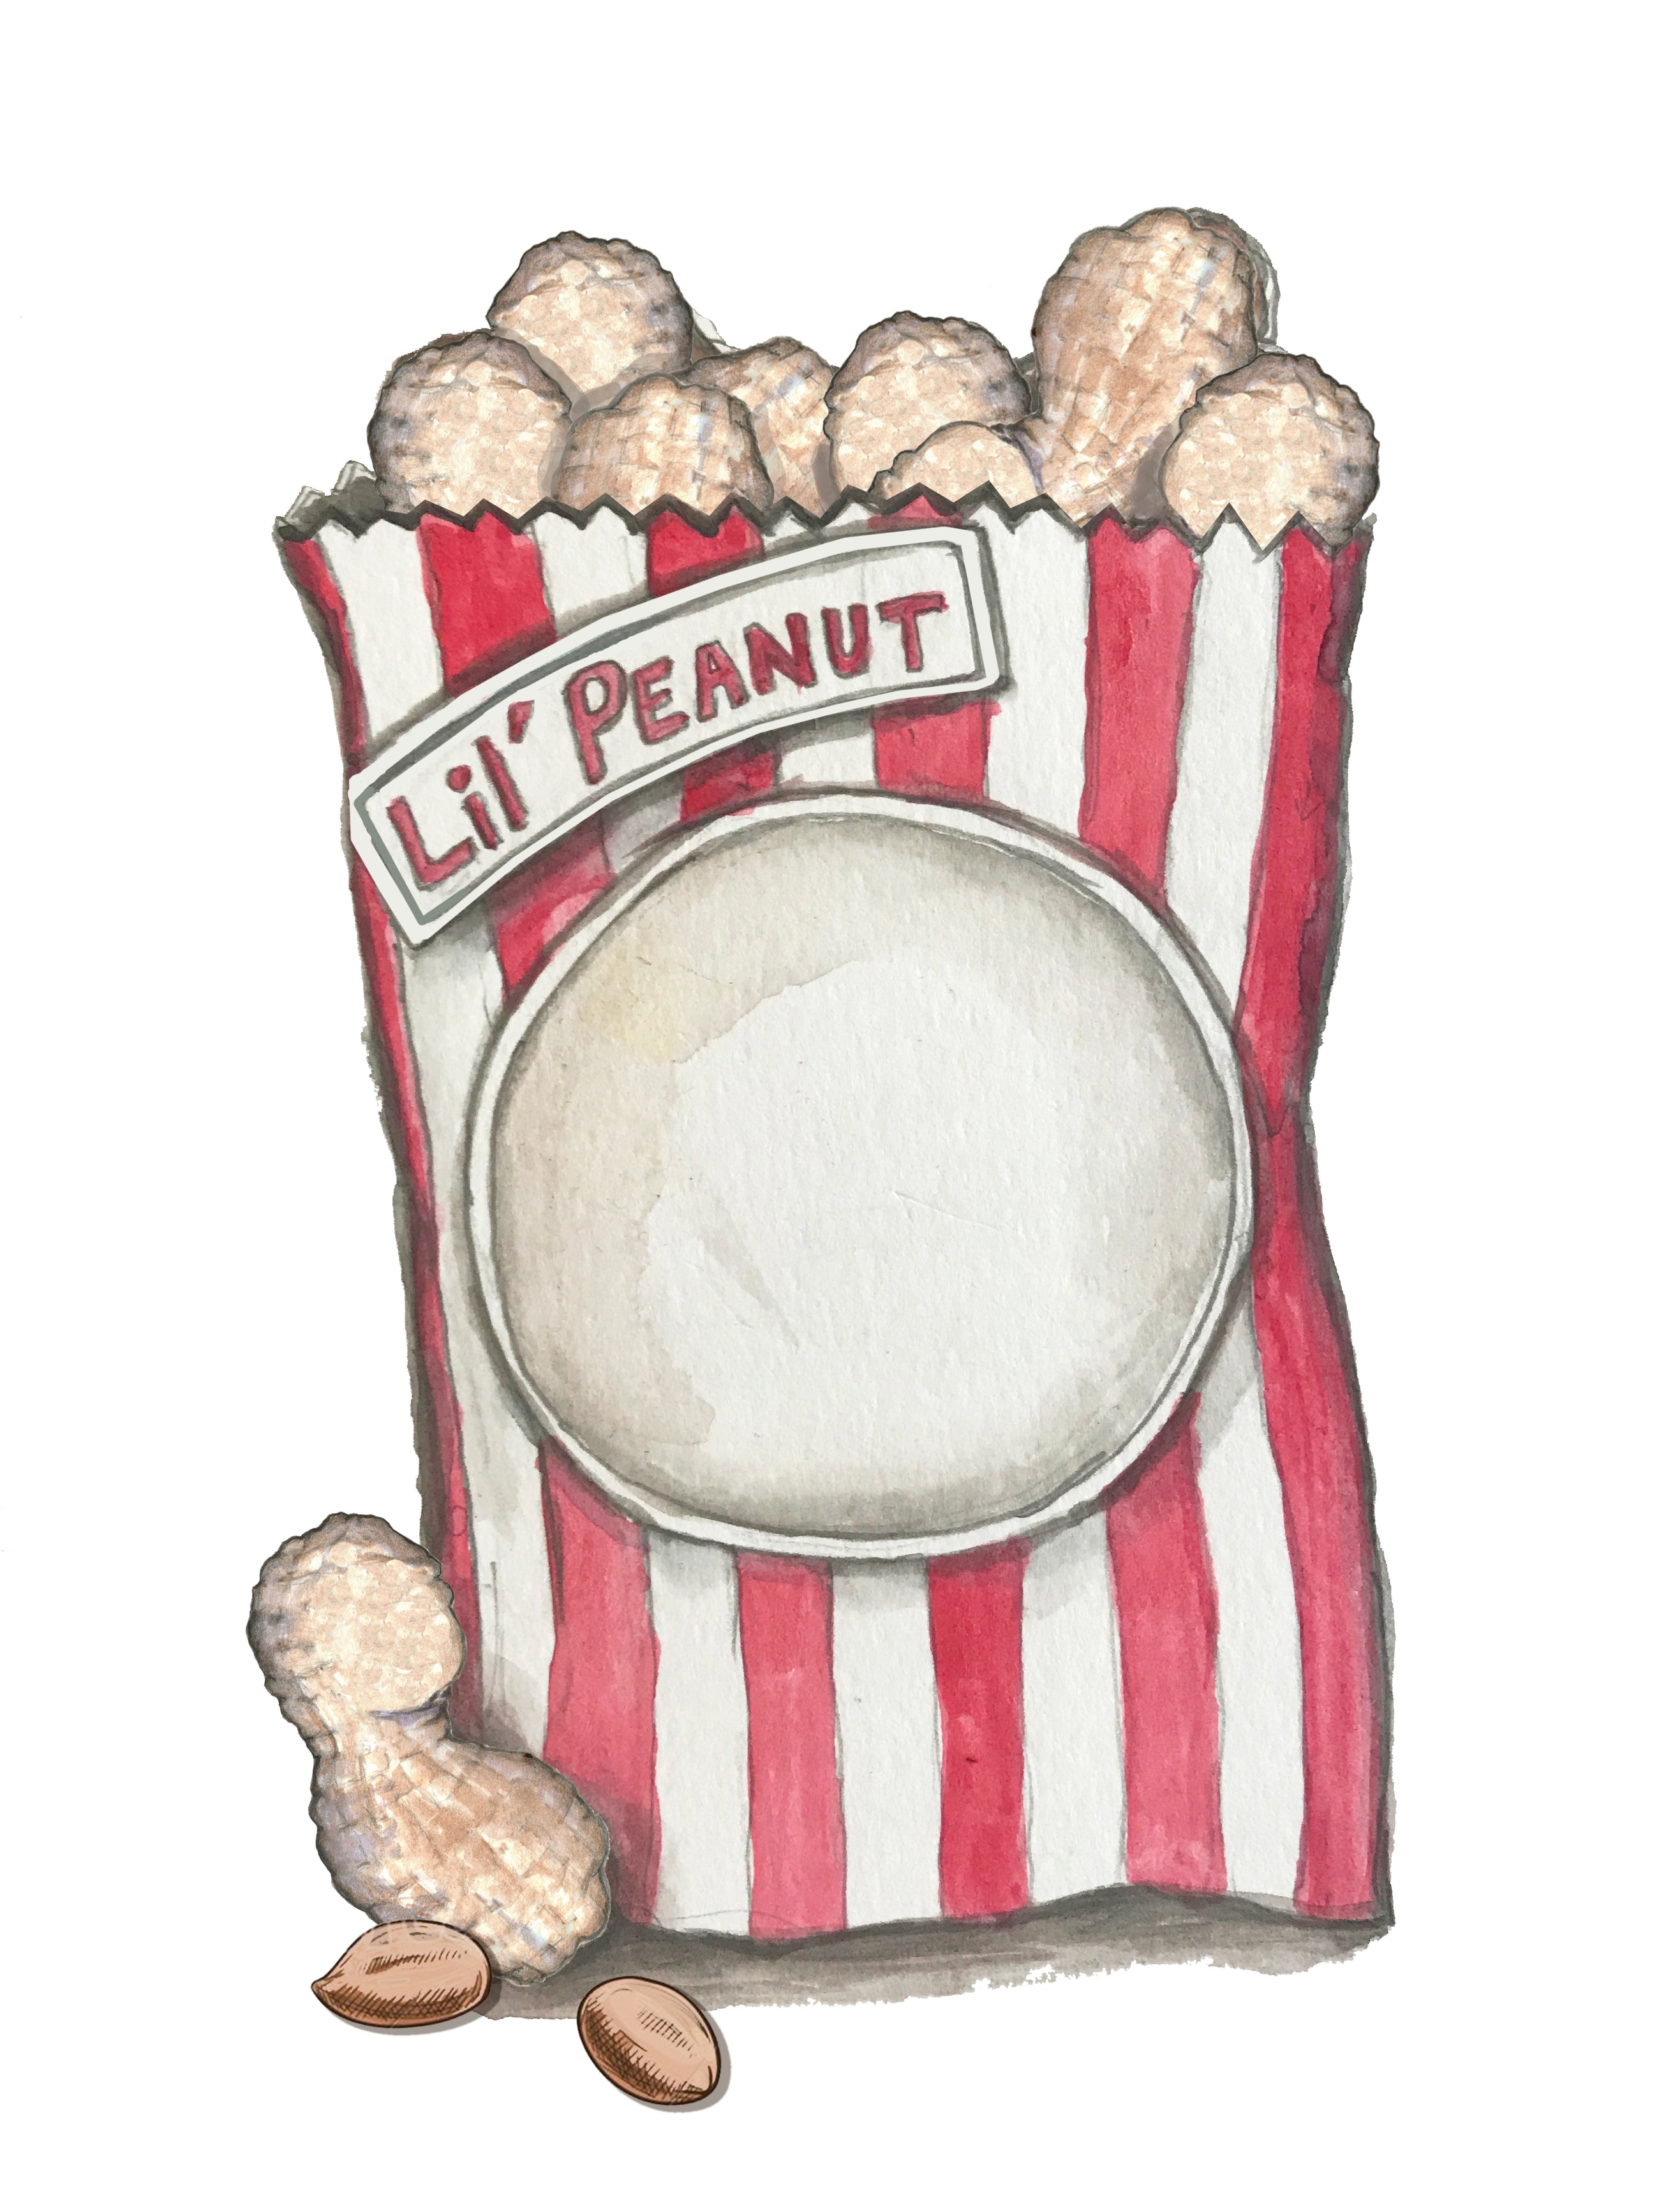 Lil' Peanut